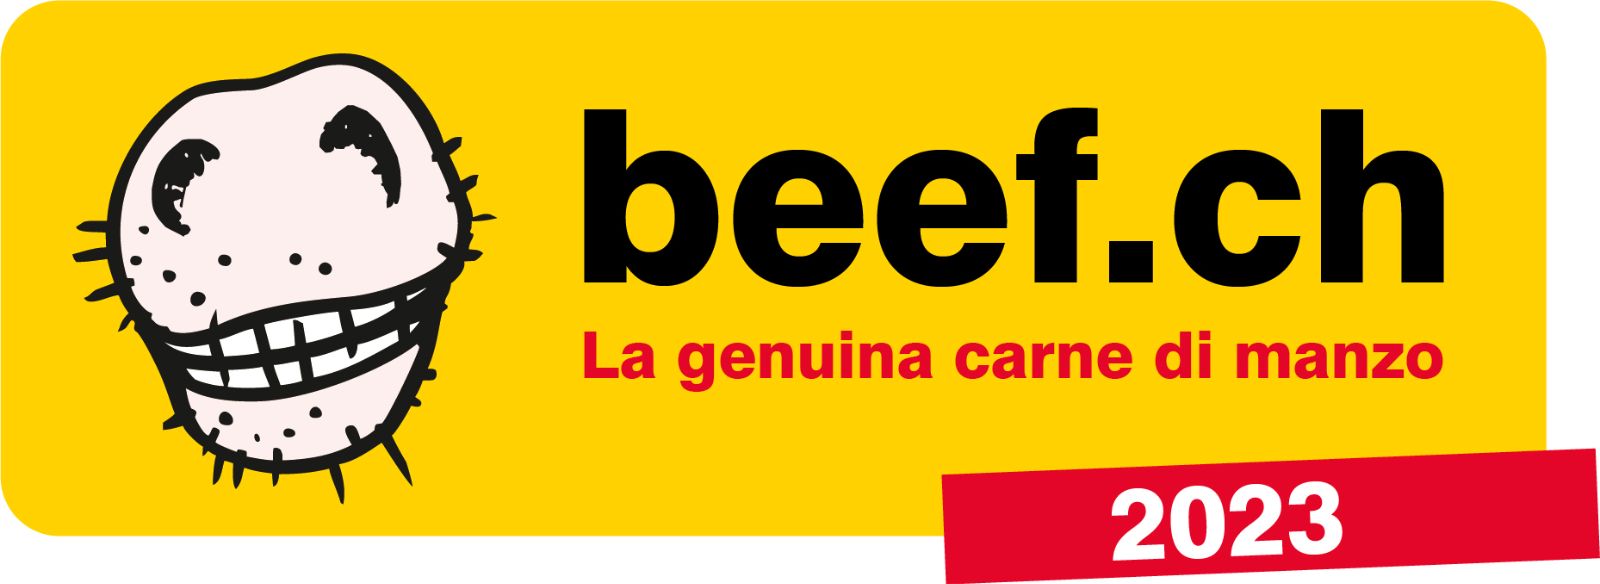 beef.ch - la genuina carne di manzo